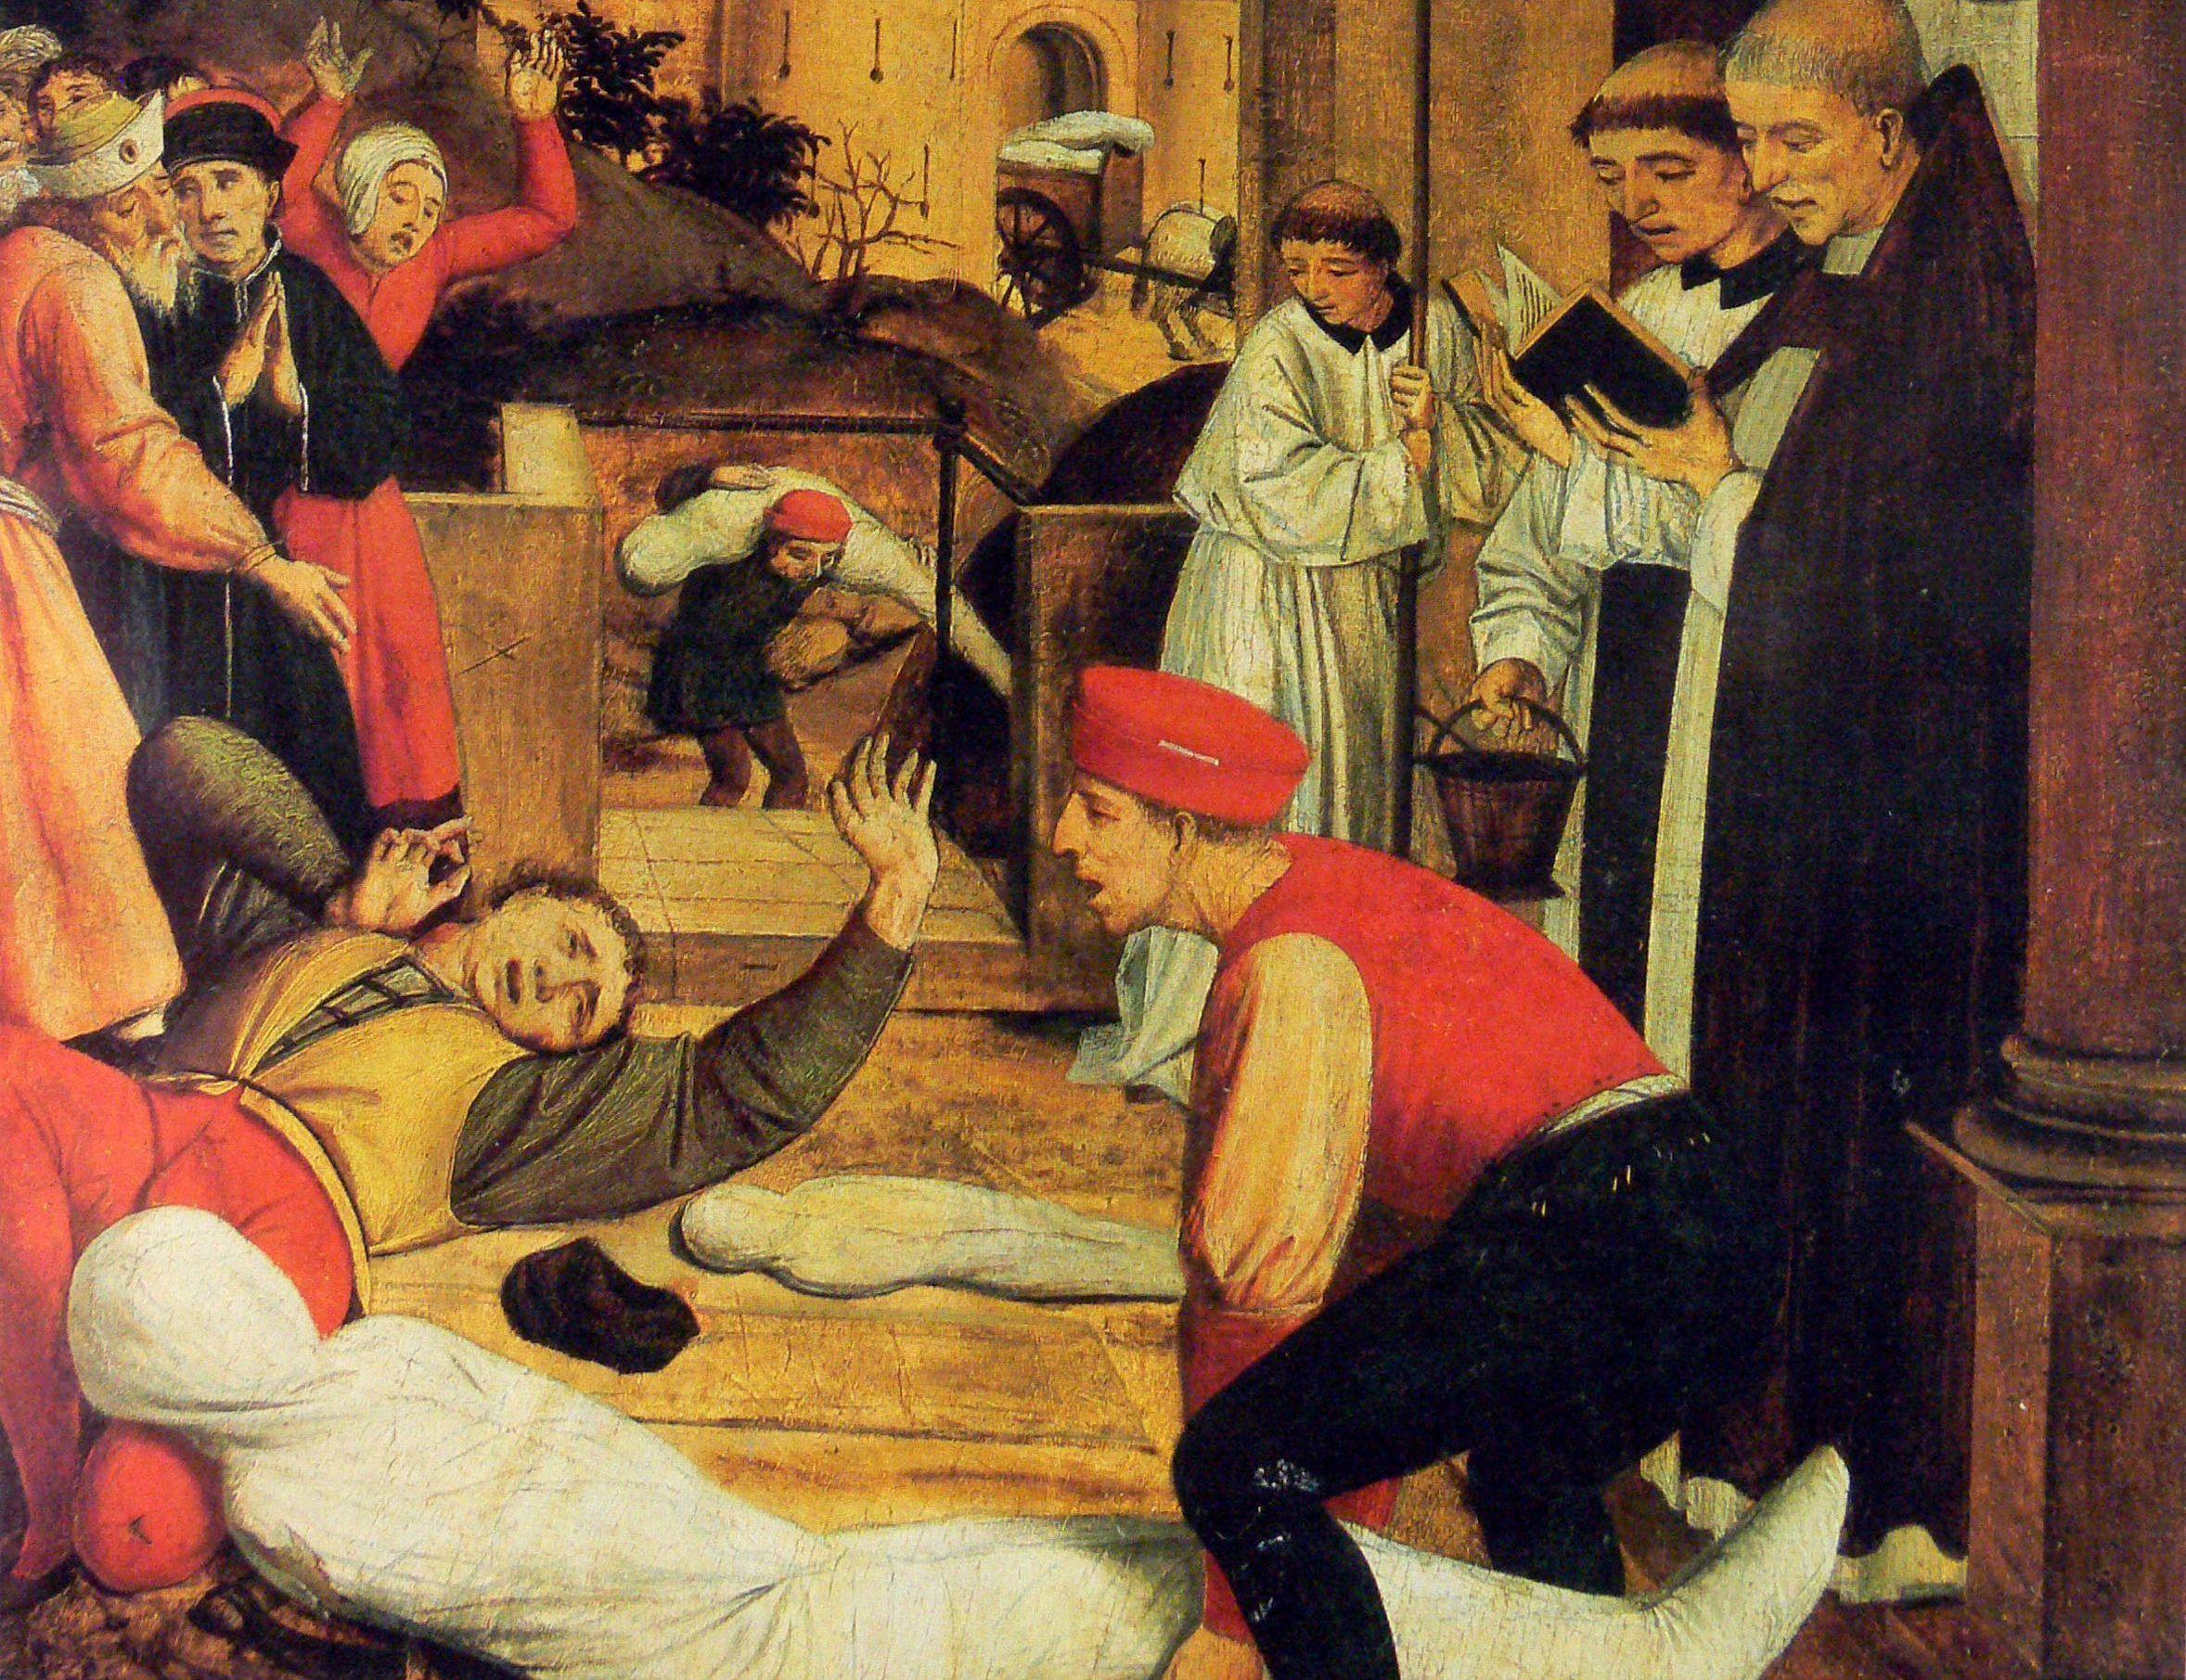 Scene fra den såkaldte justinianske pest, en pandemi, som ramte i 500-tallet. Billedet er malet i slutningen af 1400-tallet, og kunstneren har derfor skildret scener, som han selv oplevede dem under et af den sorte døds mange, senere udbrud. Oliemaleri af Josse Lieferinxe. The Walters Art Museum, Baltimore.